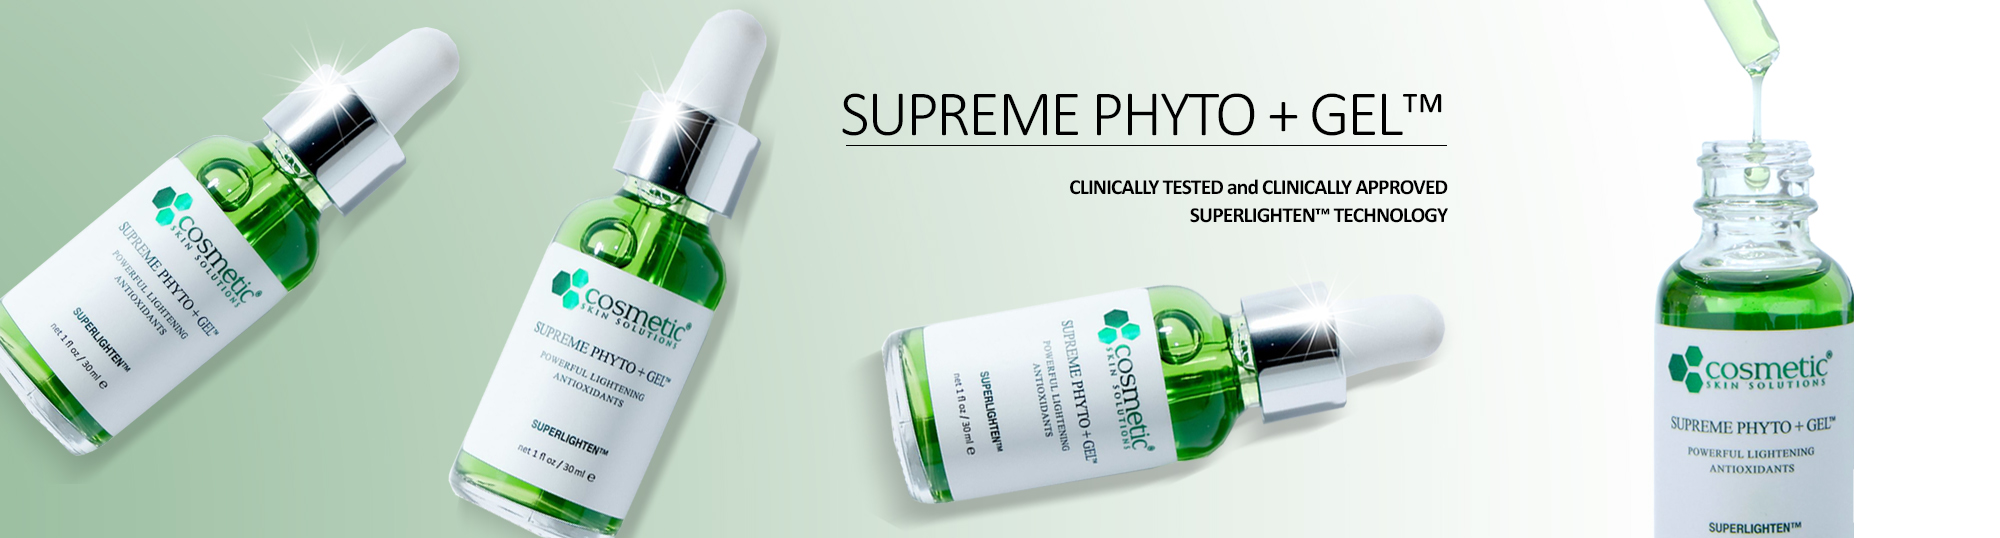 Supreme Phyto + Gel Multiple Bottles